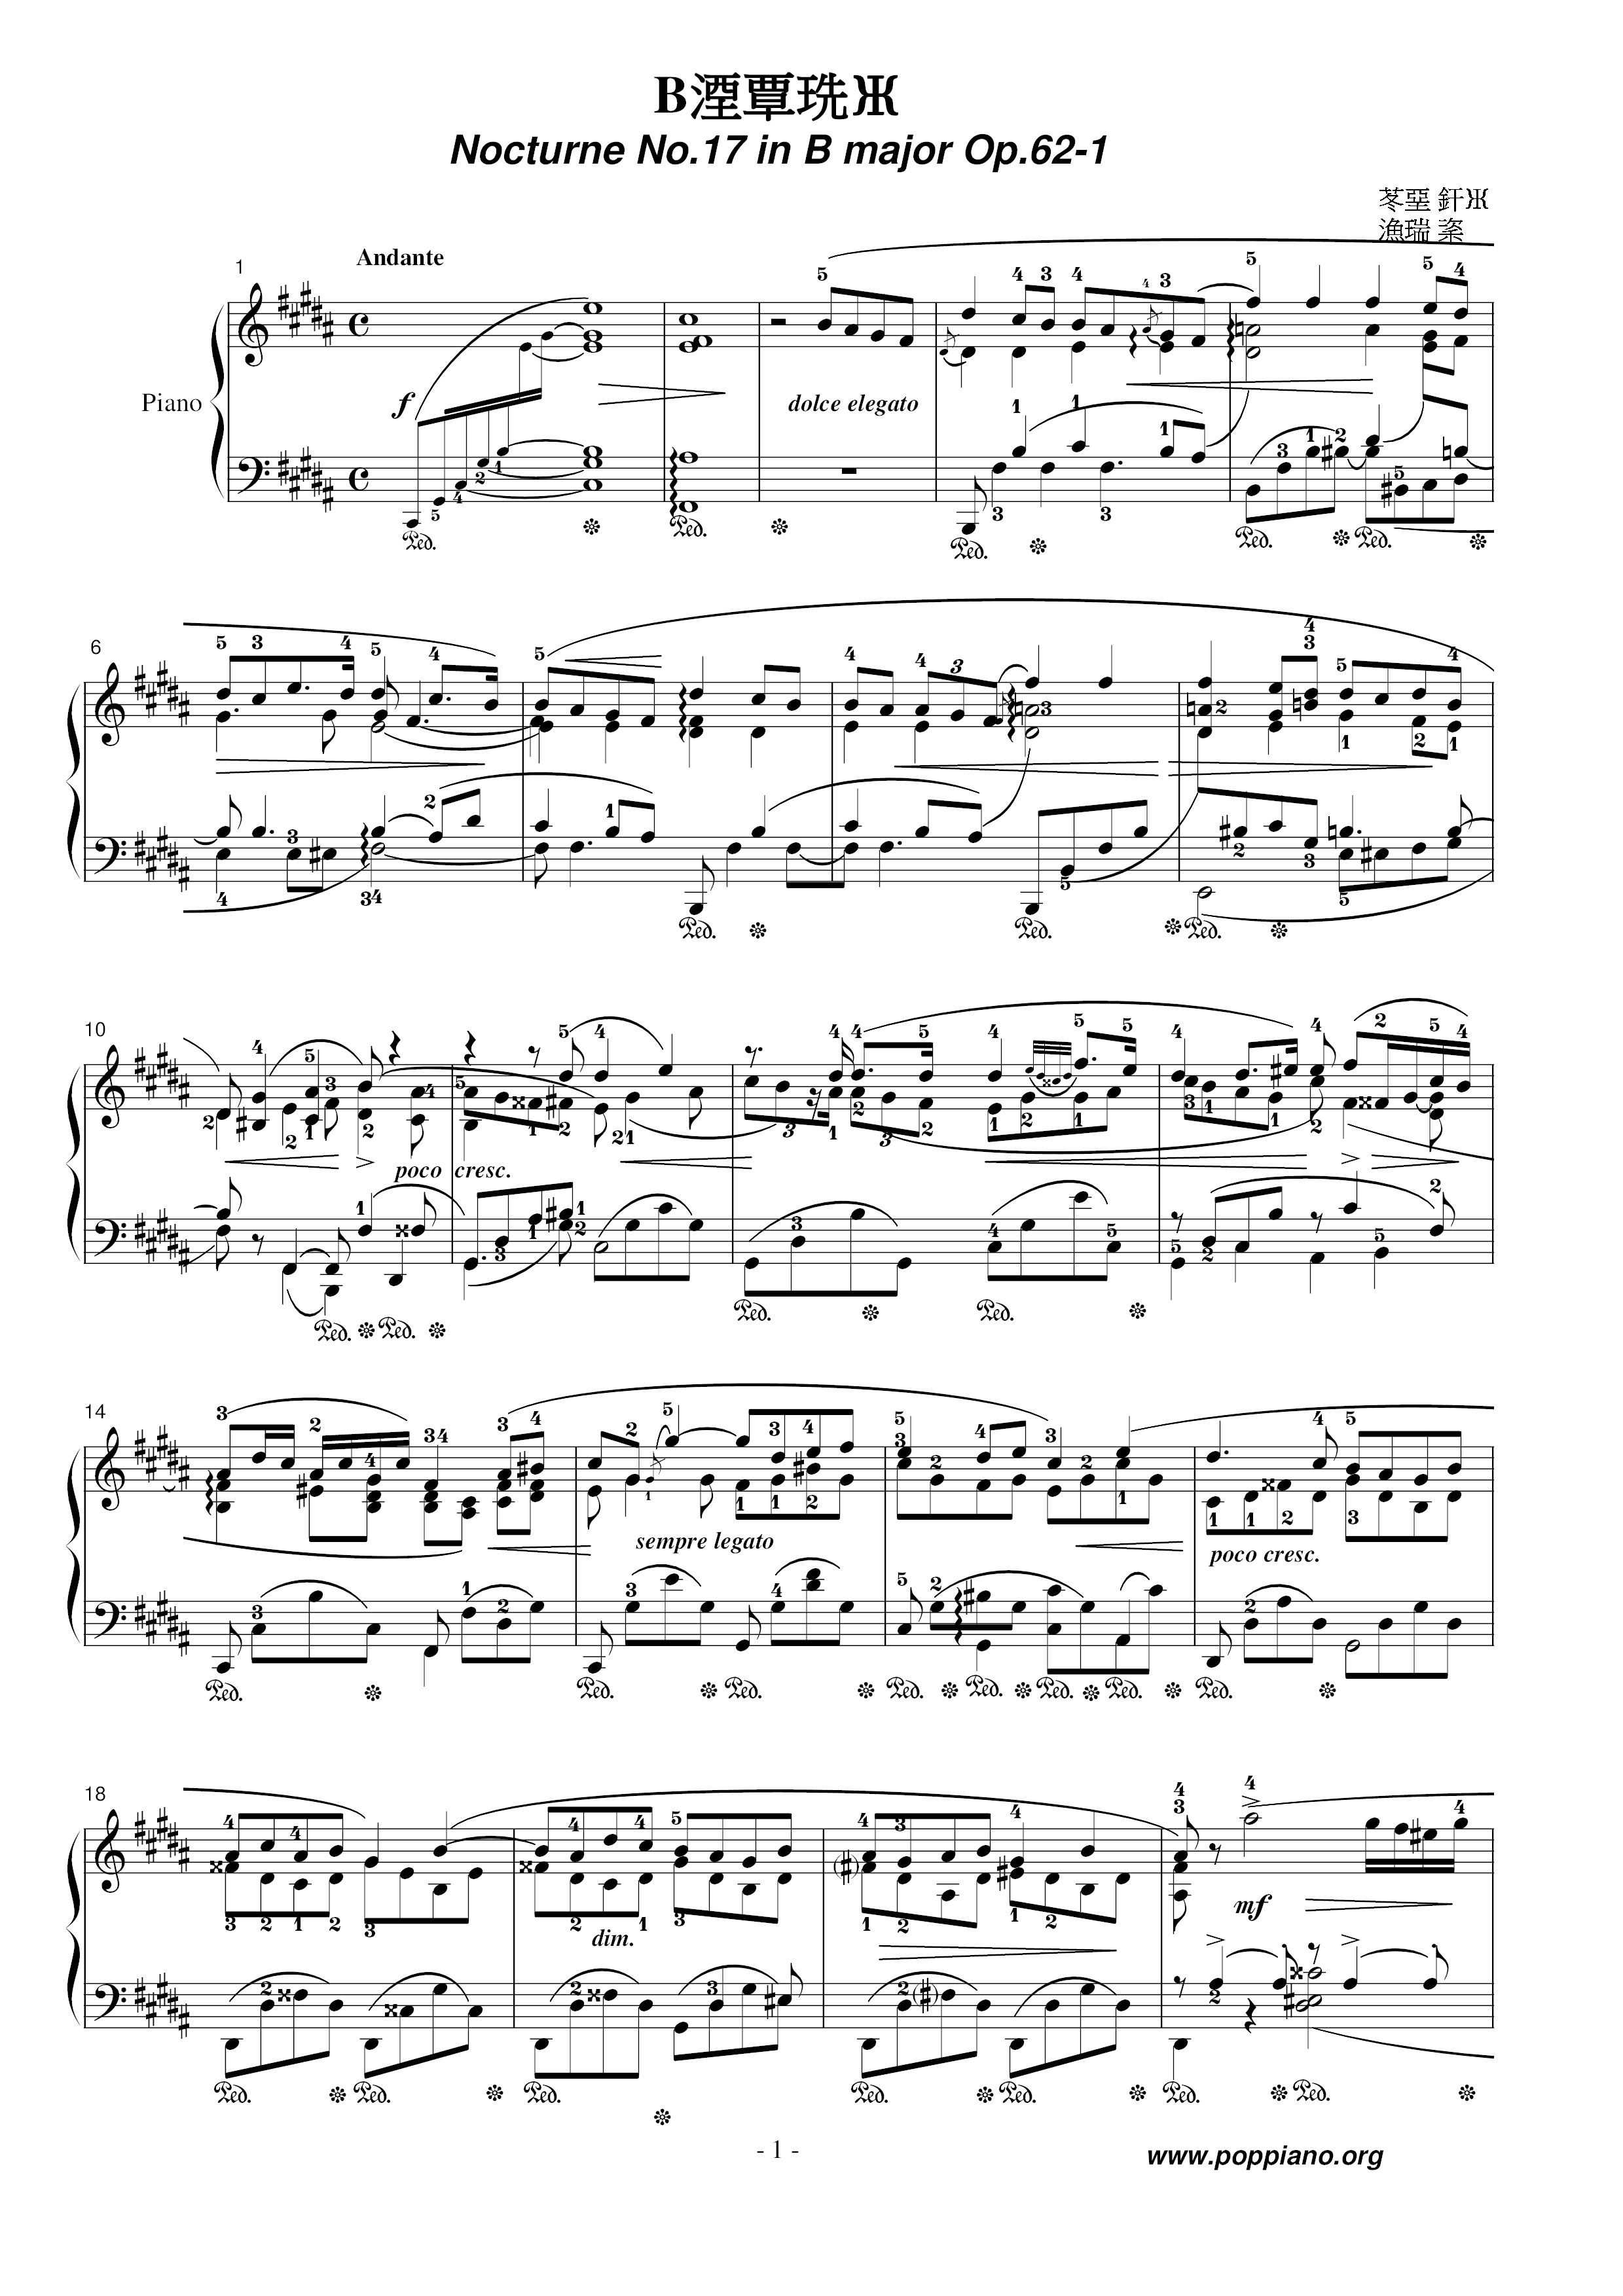 Nocturne No. 17 Score